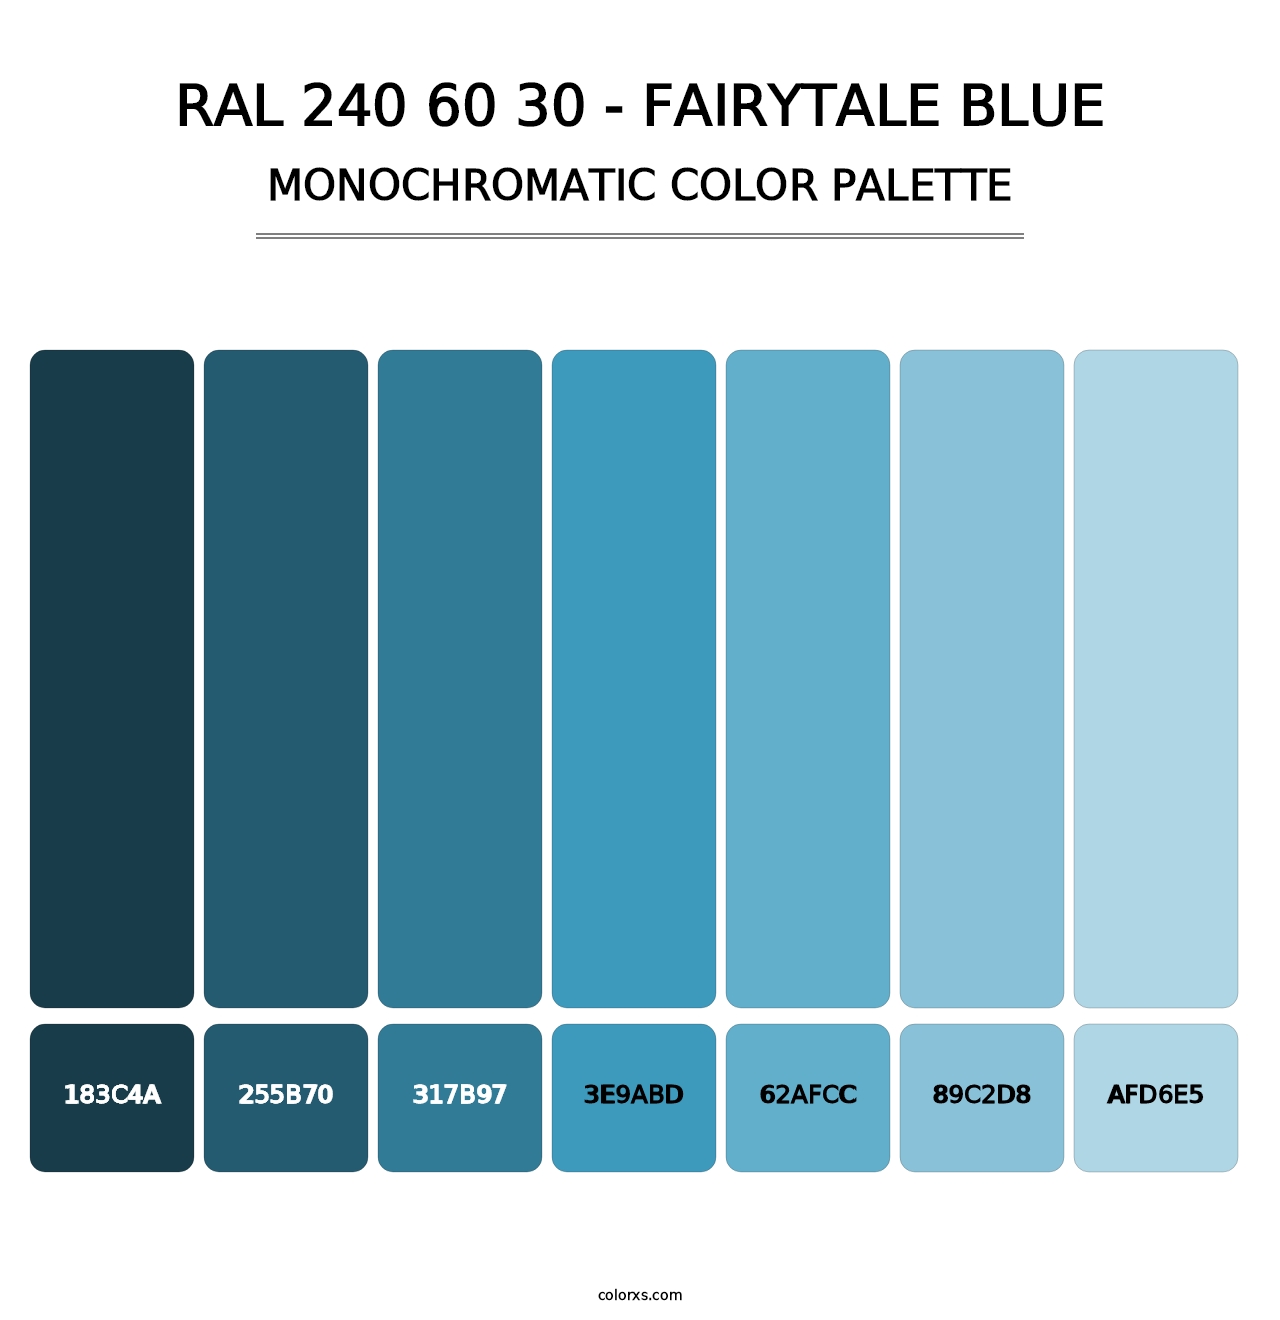 RAL 240 60 30 - Fairytale Blue - Monochromatic Color Palette